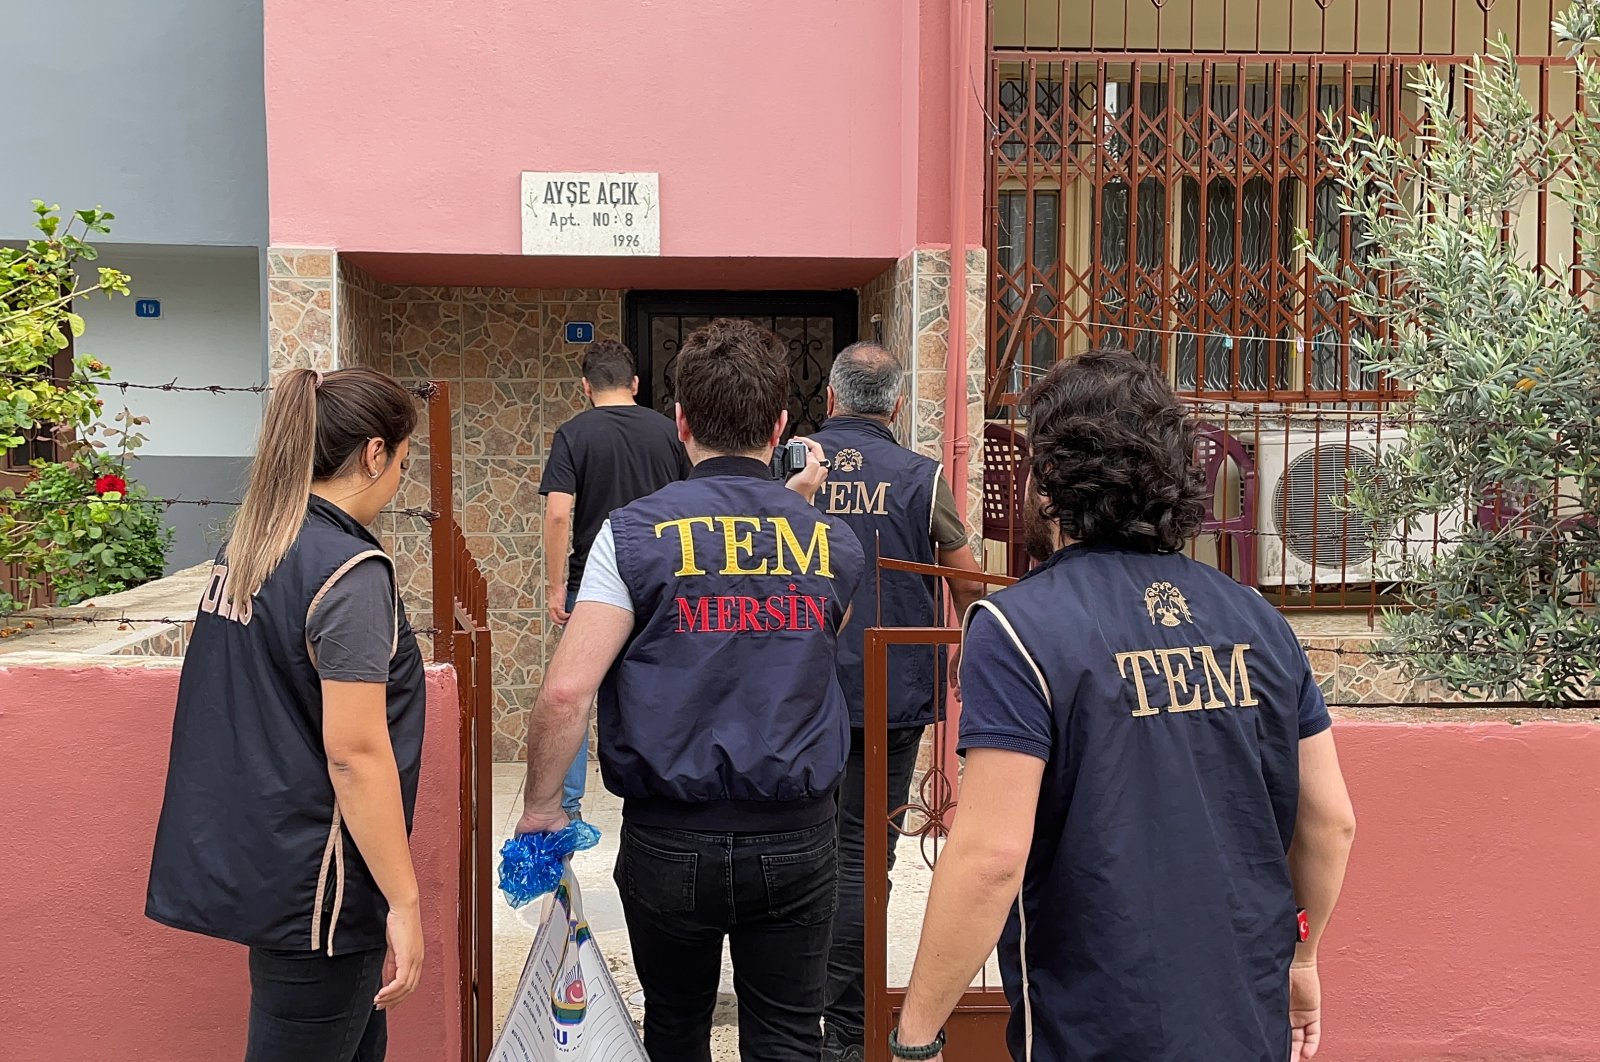 53 ditangkap, lebih banyak dicari dalam gelombang operasi FETO di Turki